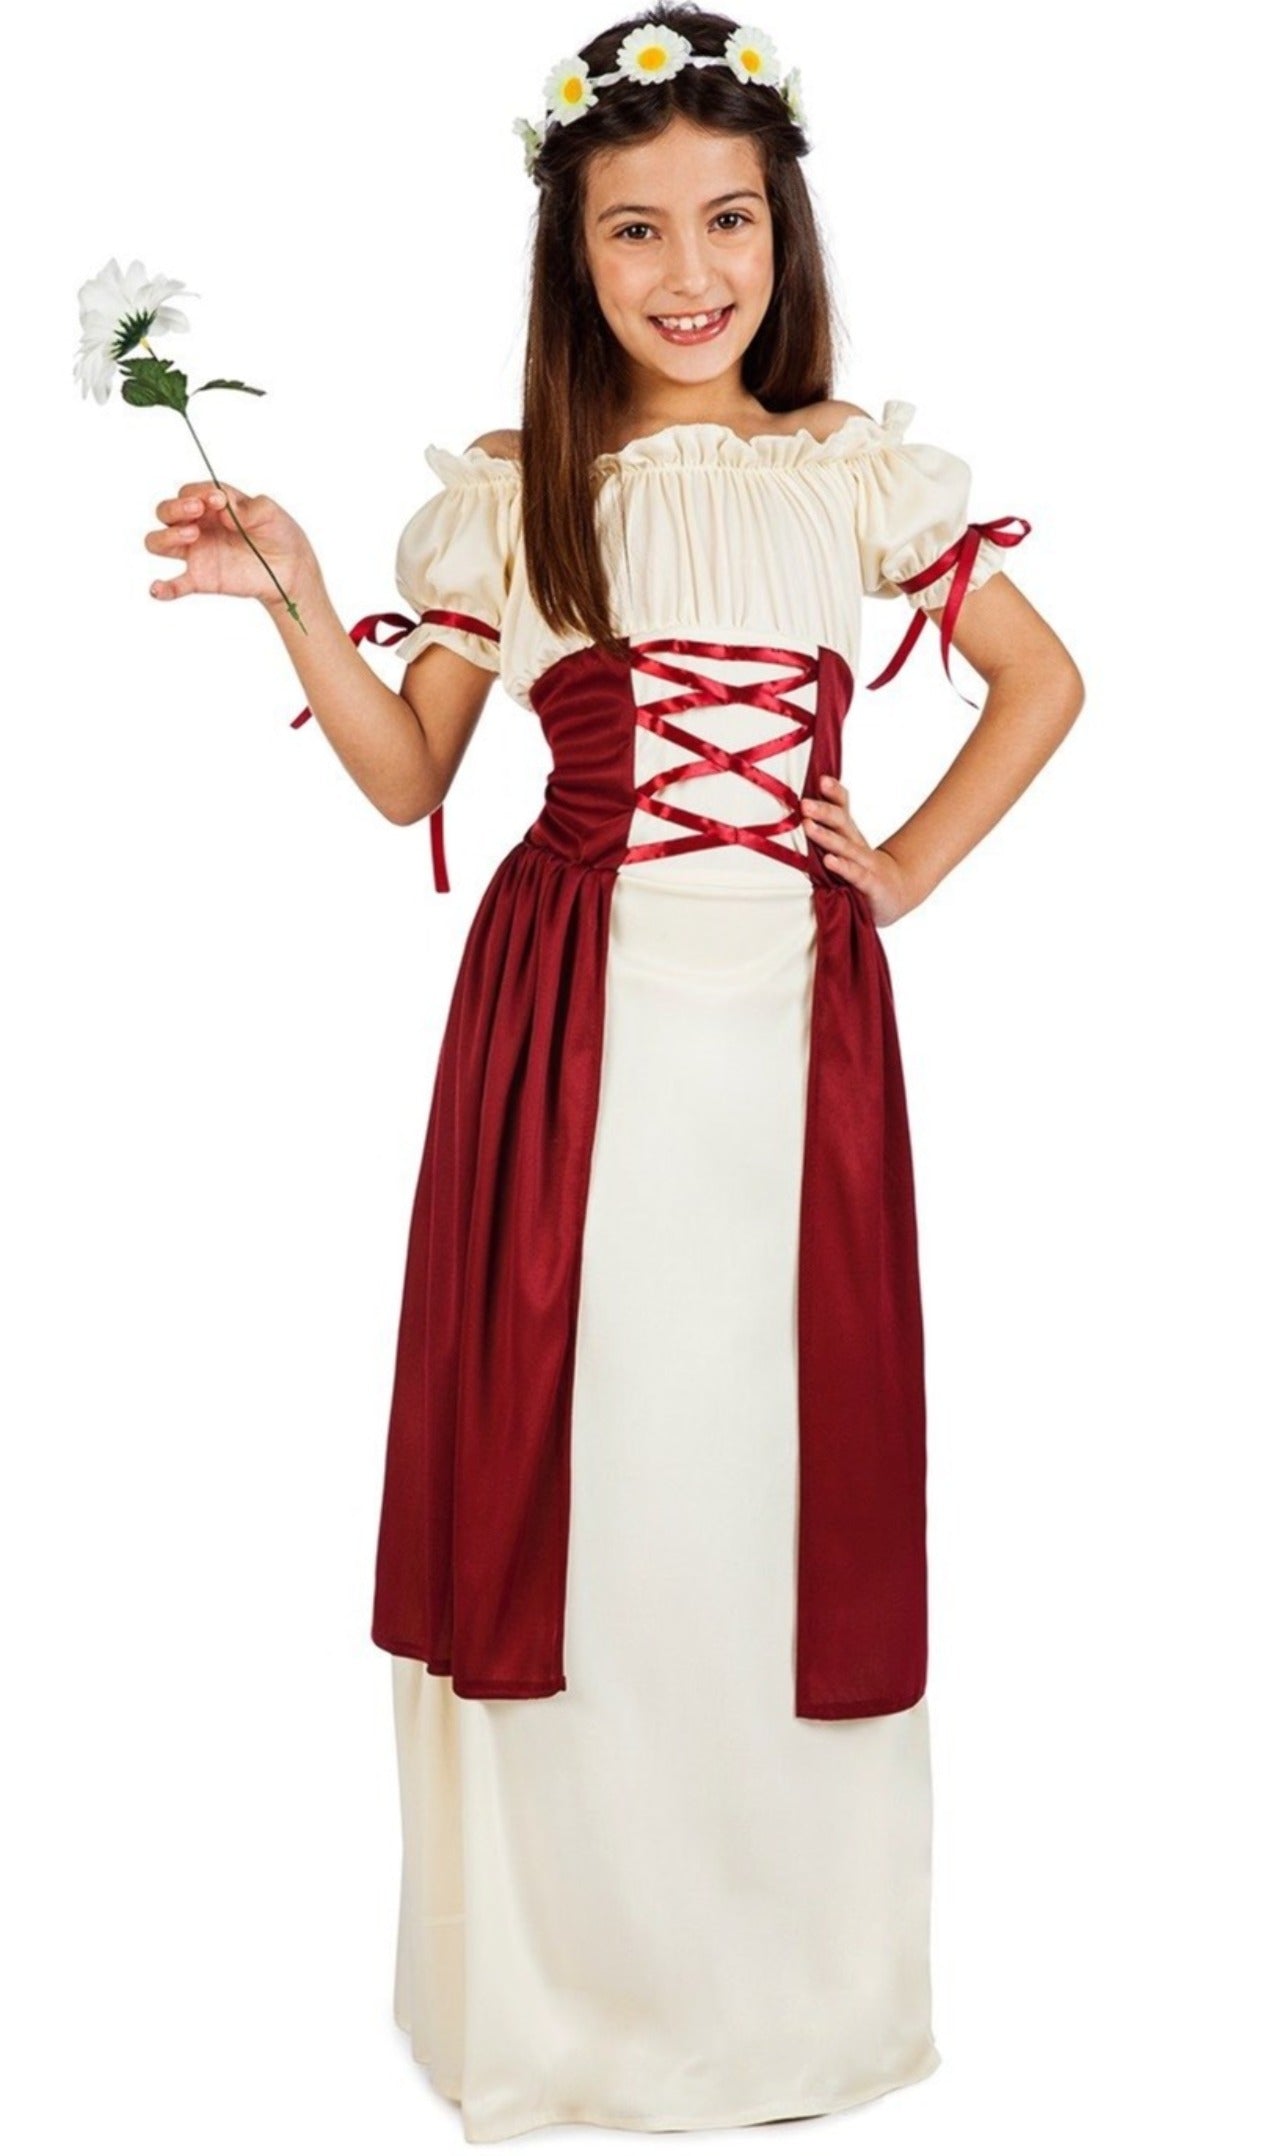 Disfraz de Mujer medieval